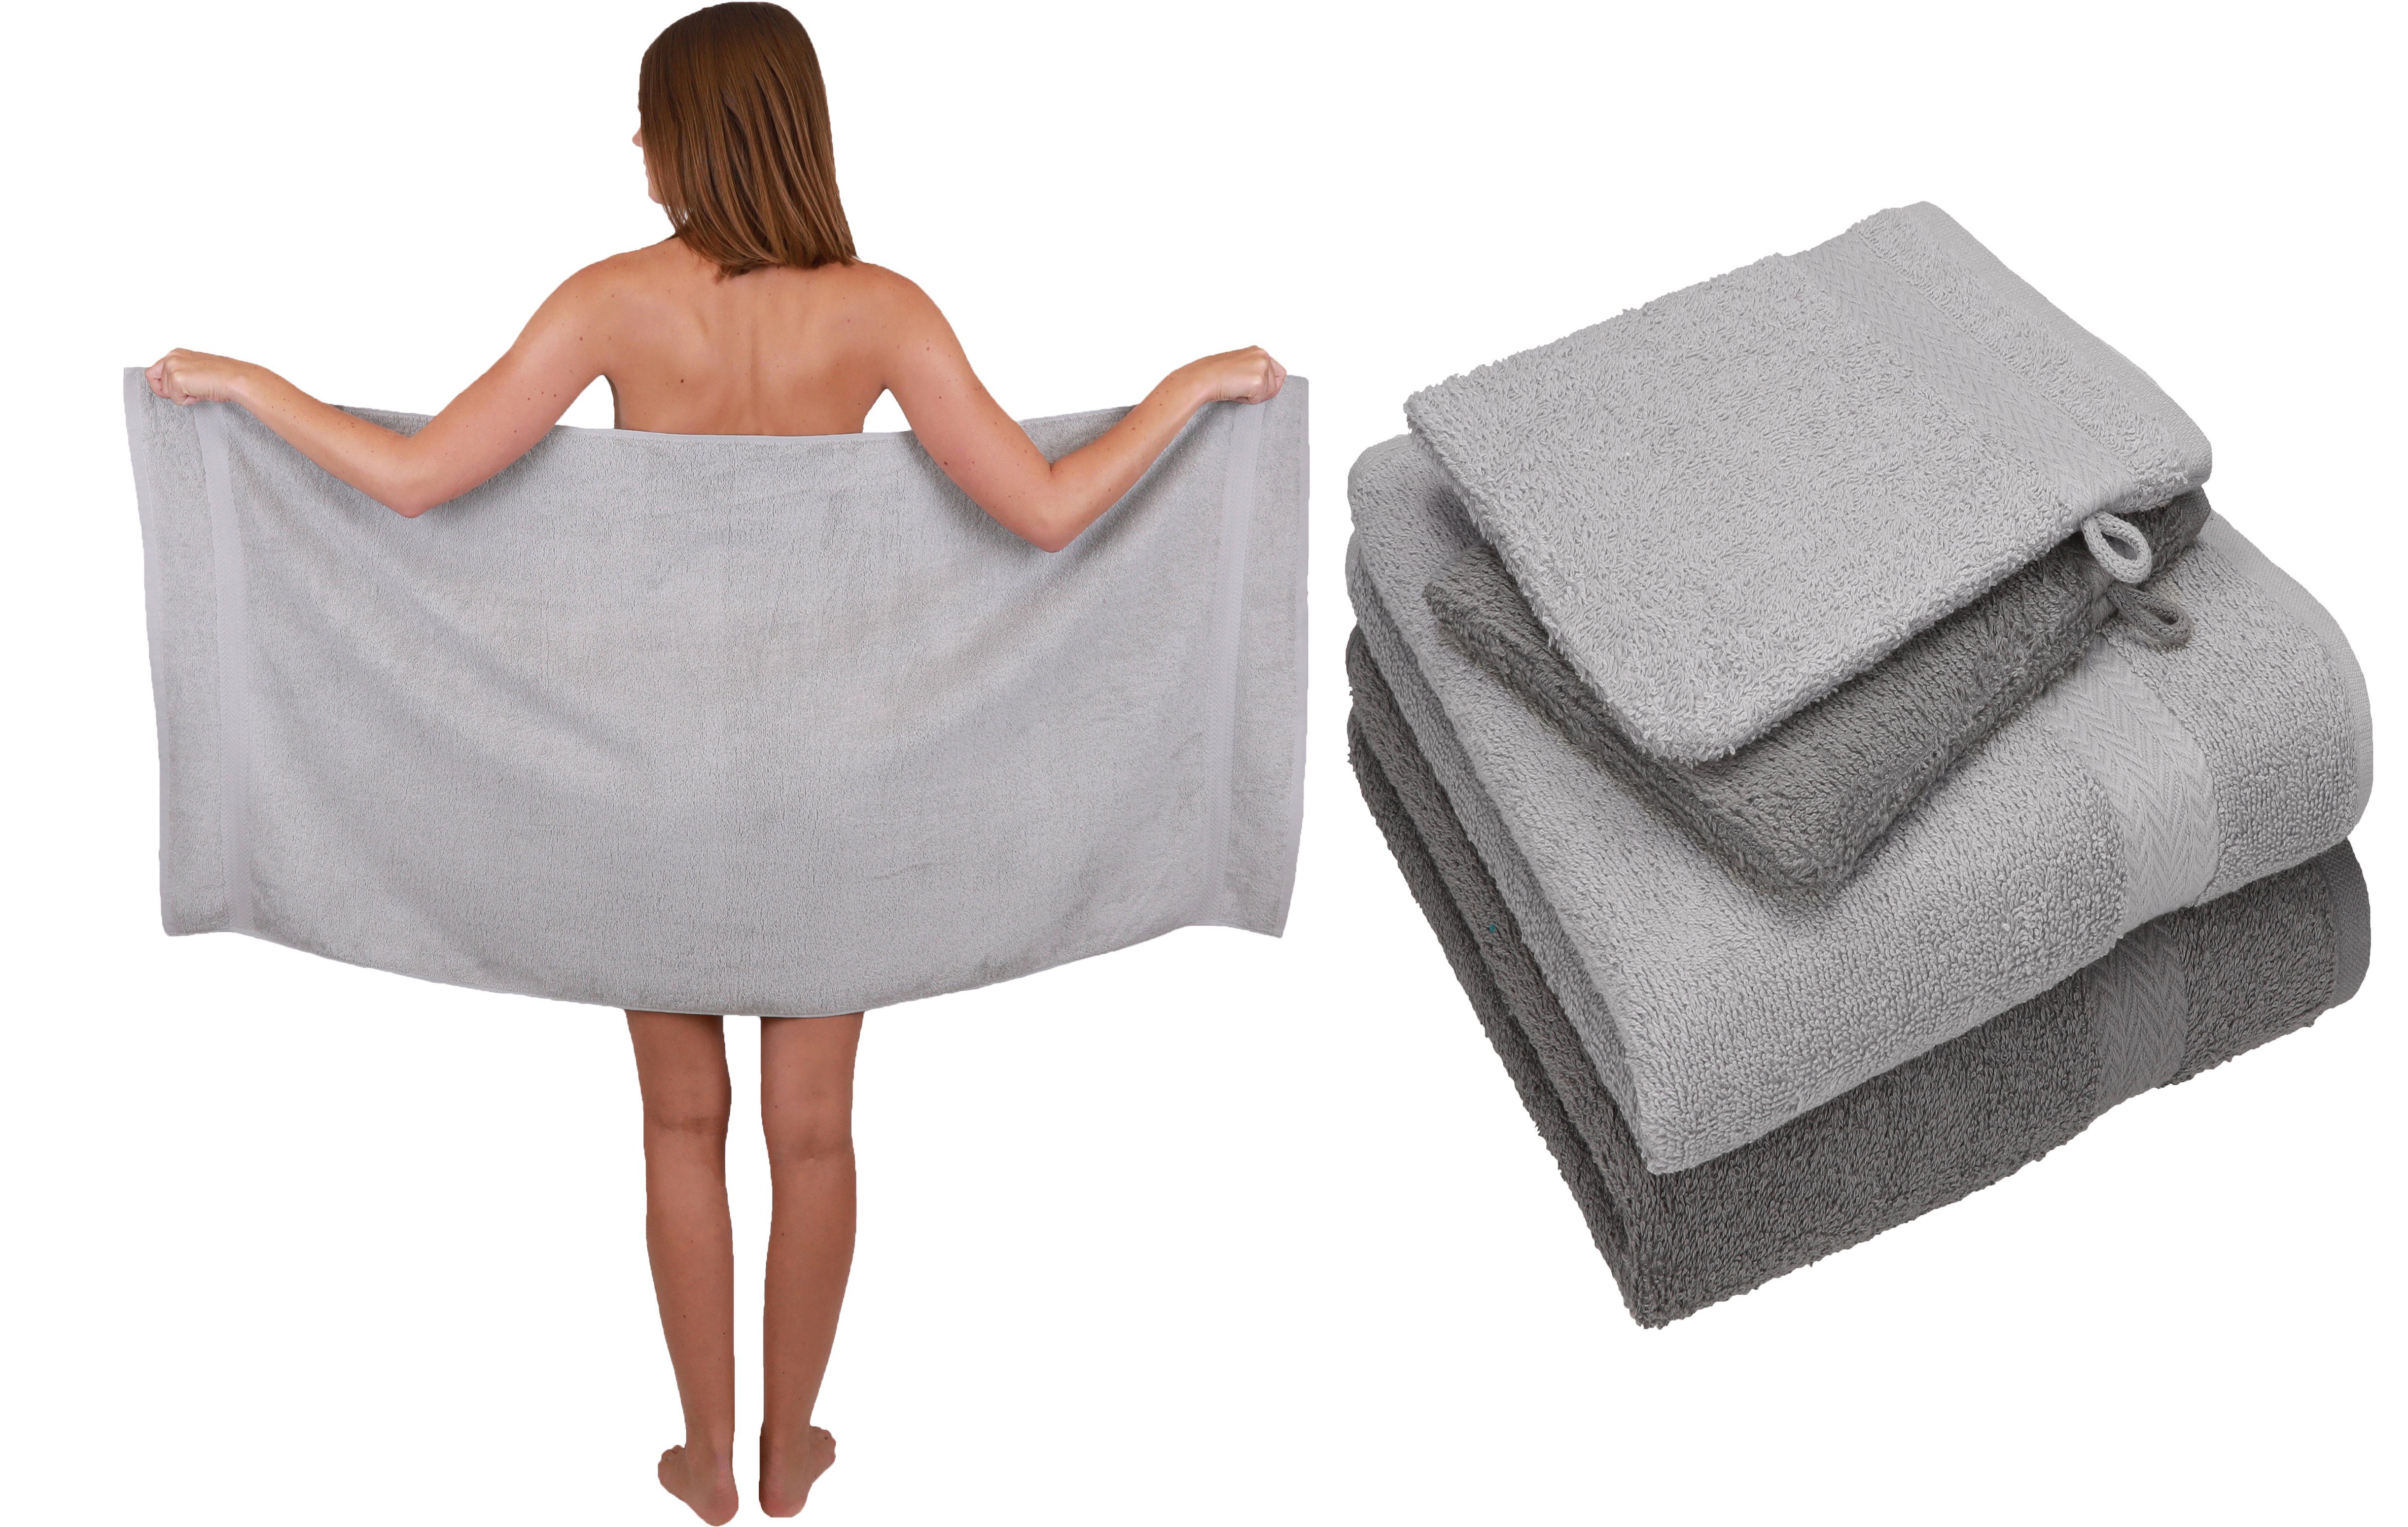 Betz Handtuch Set Betz 5 TLG. Handtuch Set Single Pack 100% Baumwolle 1 Duschtuch 2 Handtücher 2 Waschhandschuhe, Baumwolle, (5-tlg) silbergrau